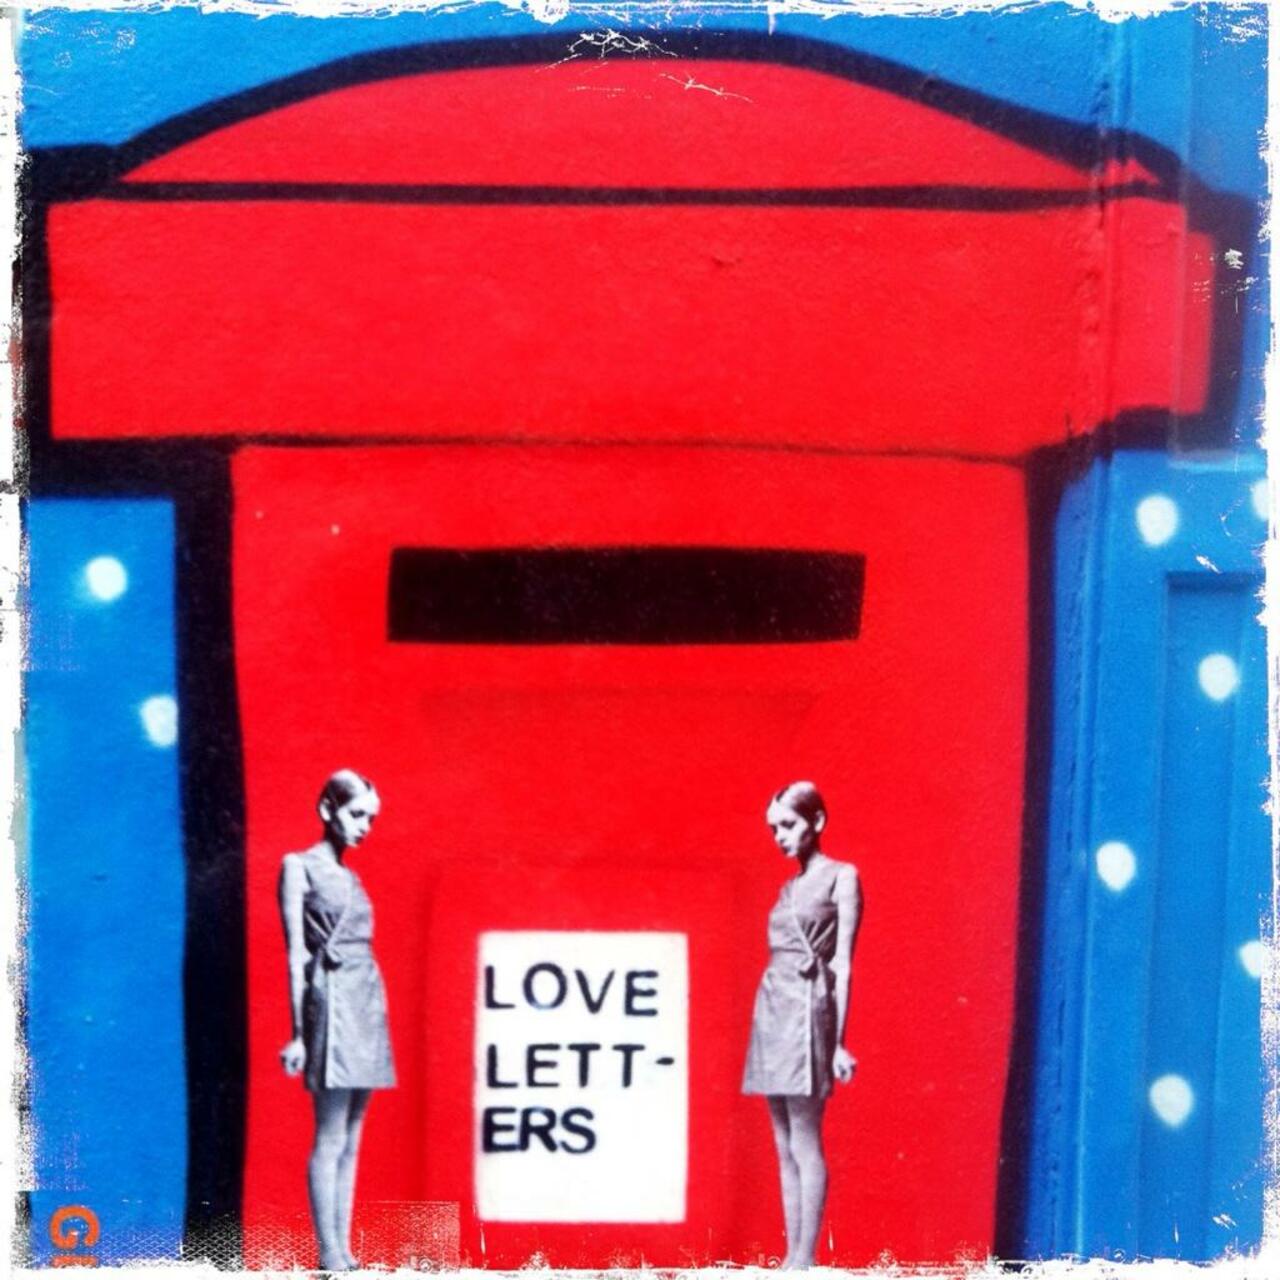 Love Letters... #Streetart by @D7606ART on White Church Lane #art #graffiti http://t.co/m7uO5KxmIz RT @BrickLaneArt "